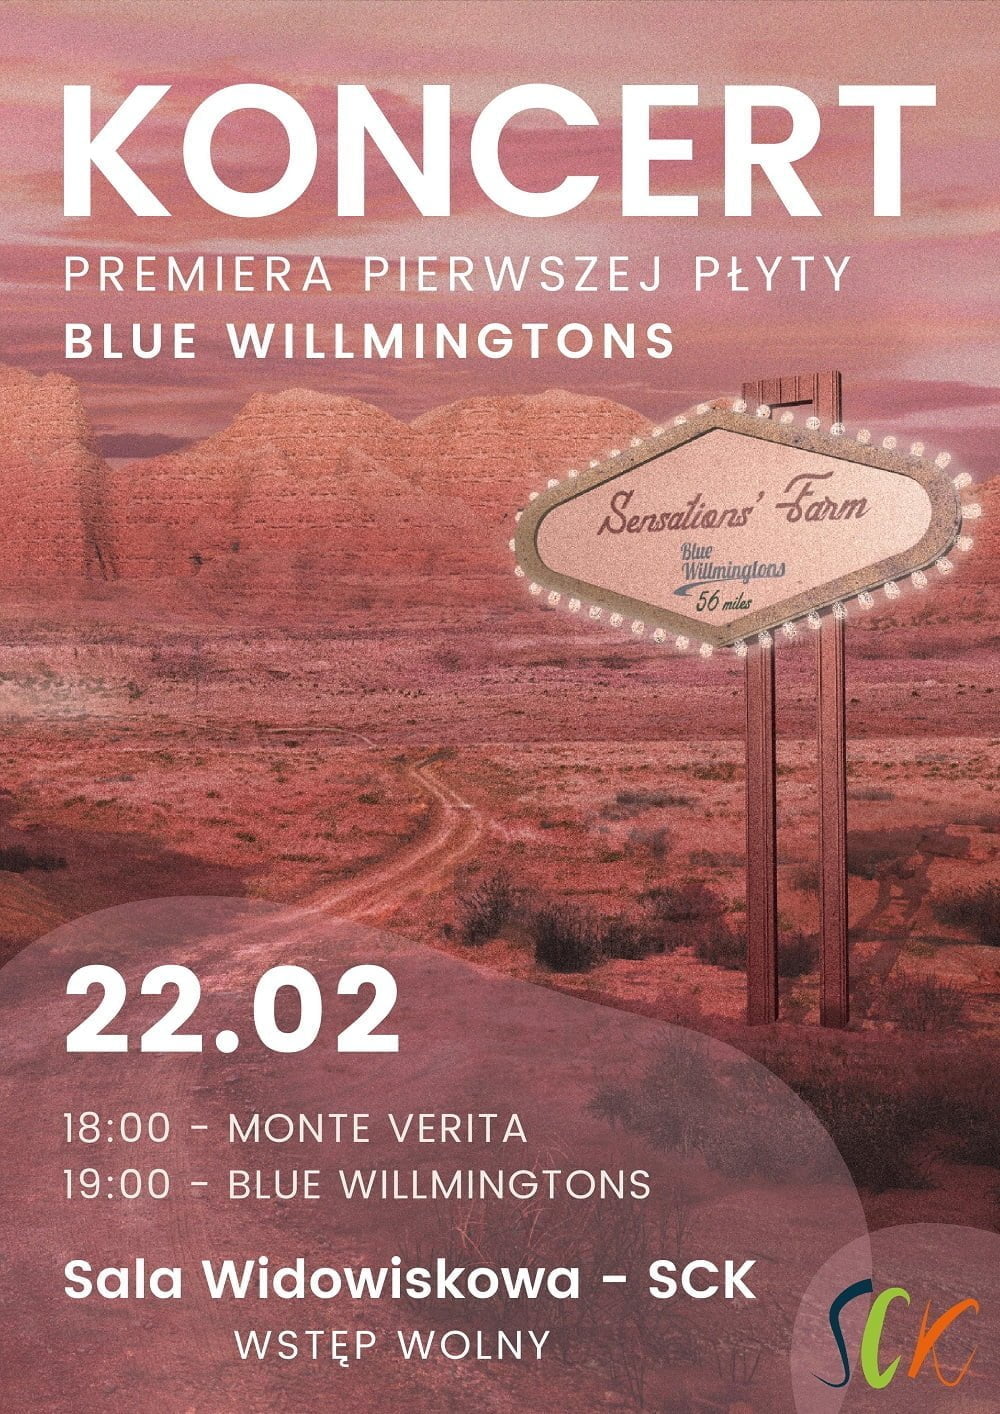 Koncert promujący pierwszą płytę Blue Willmingtons